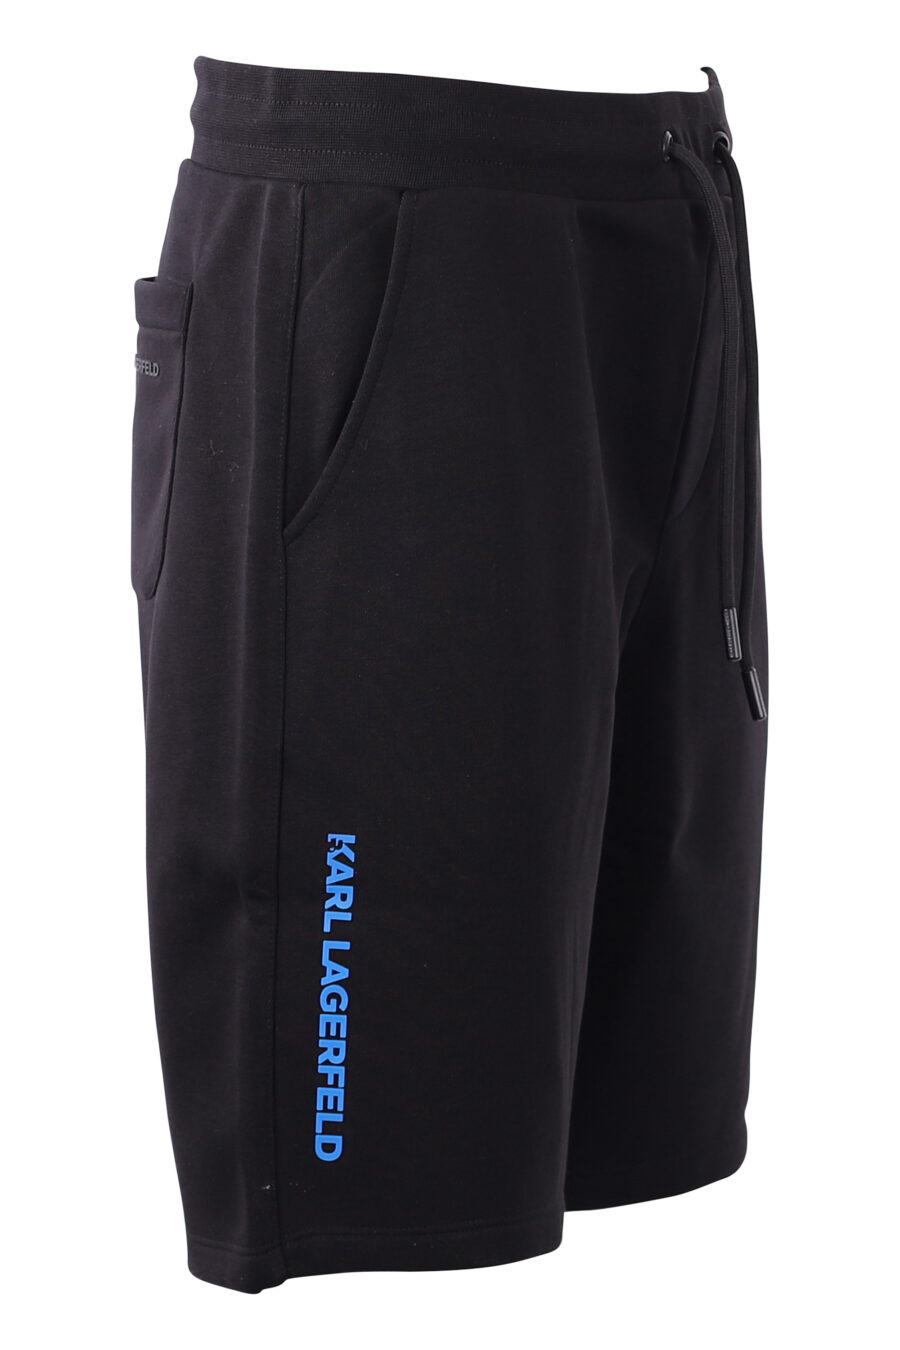 Tracksuit shorts black with blue logo - IMG 8586